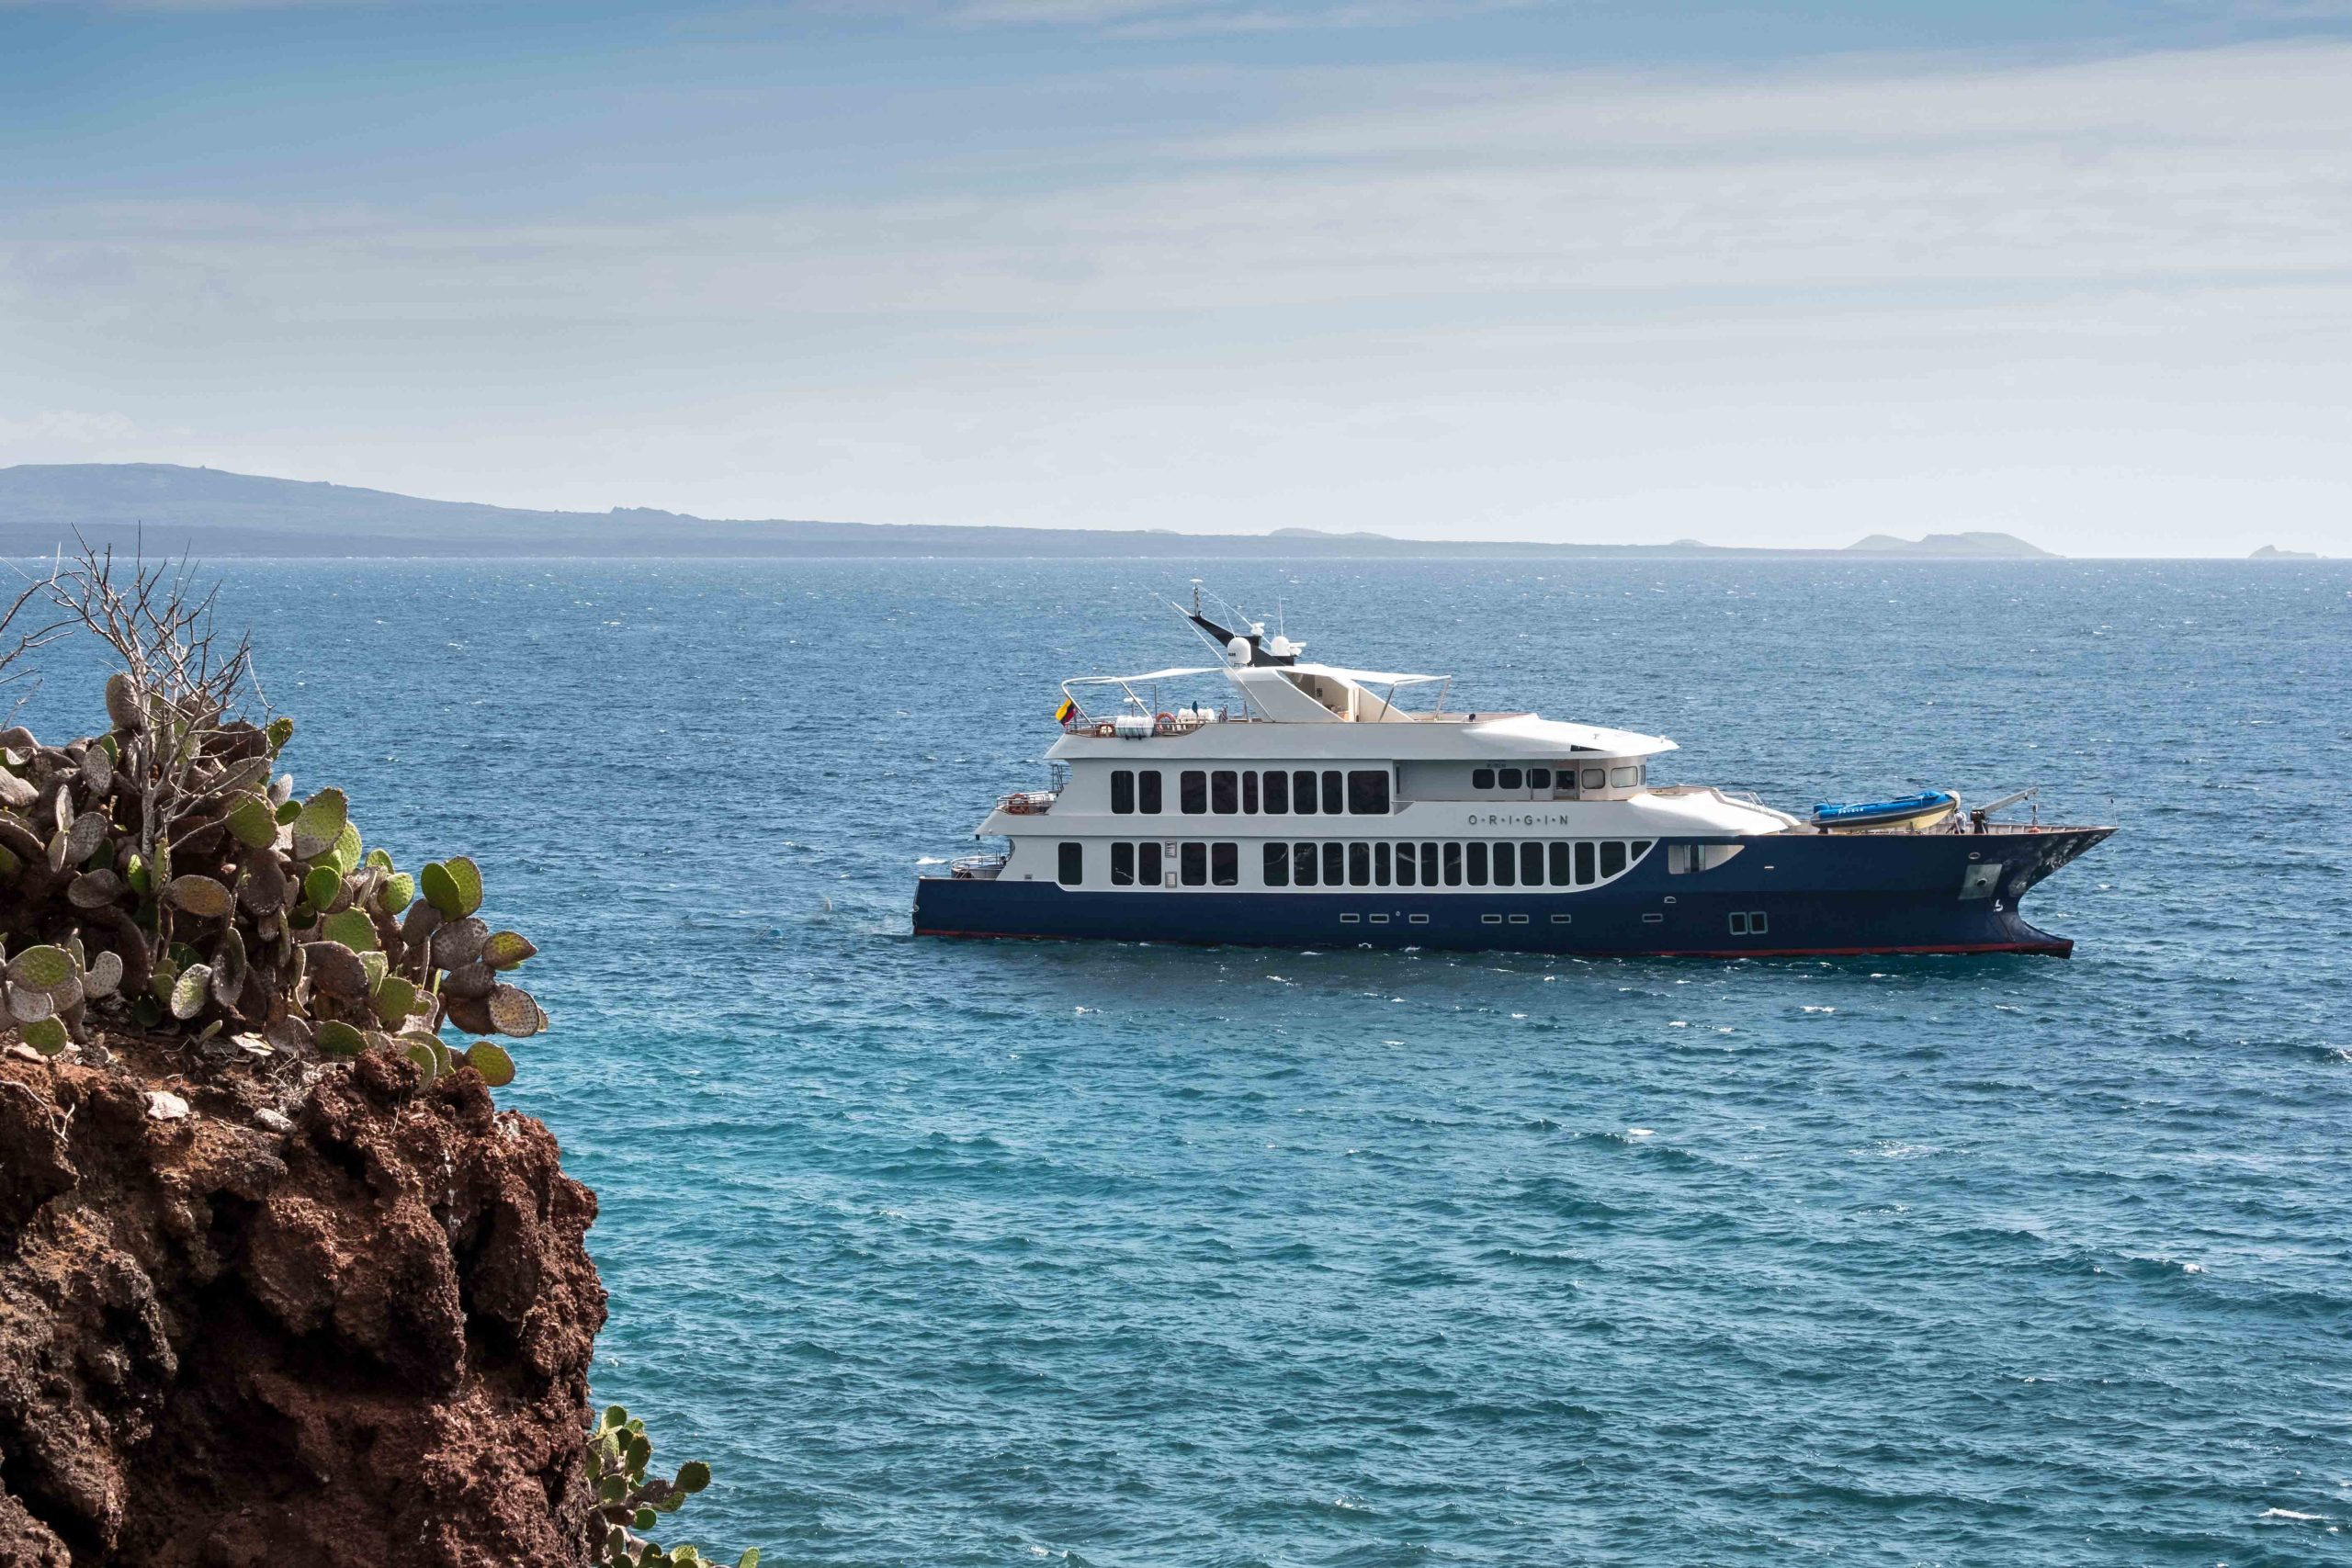 Du thuyền MV Origin cao cấp - Ecoventura là một sự lựa chọn tuyệt vời cho dịp nghỉ mát đầy thú vị của bạn. Với sự tiện nghi và hiện đại, du khách sẽ có được trải nghiệm du lịch thảm thực đầy thú vị. Hãy tham gia du lịch trên du thuyền MV Origin và tận hưởng những điều tuyệt vời nhất của biển cả. 